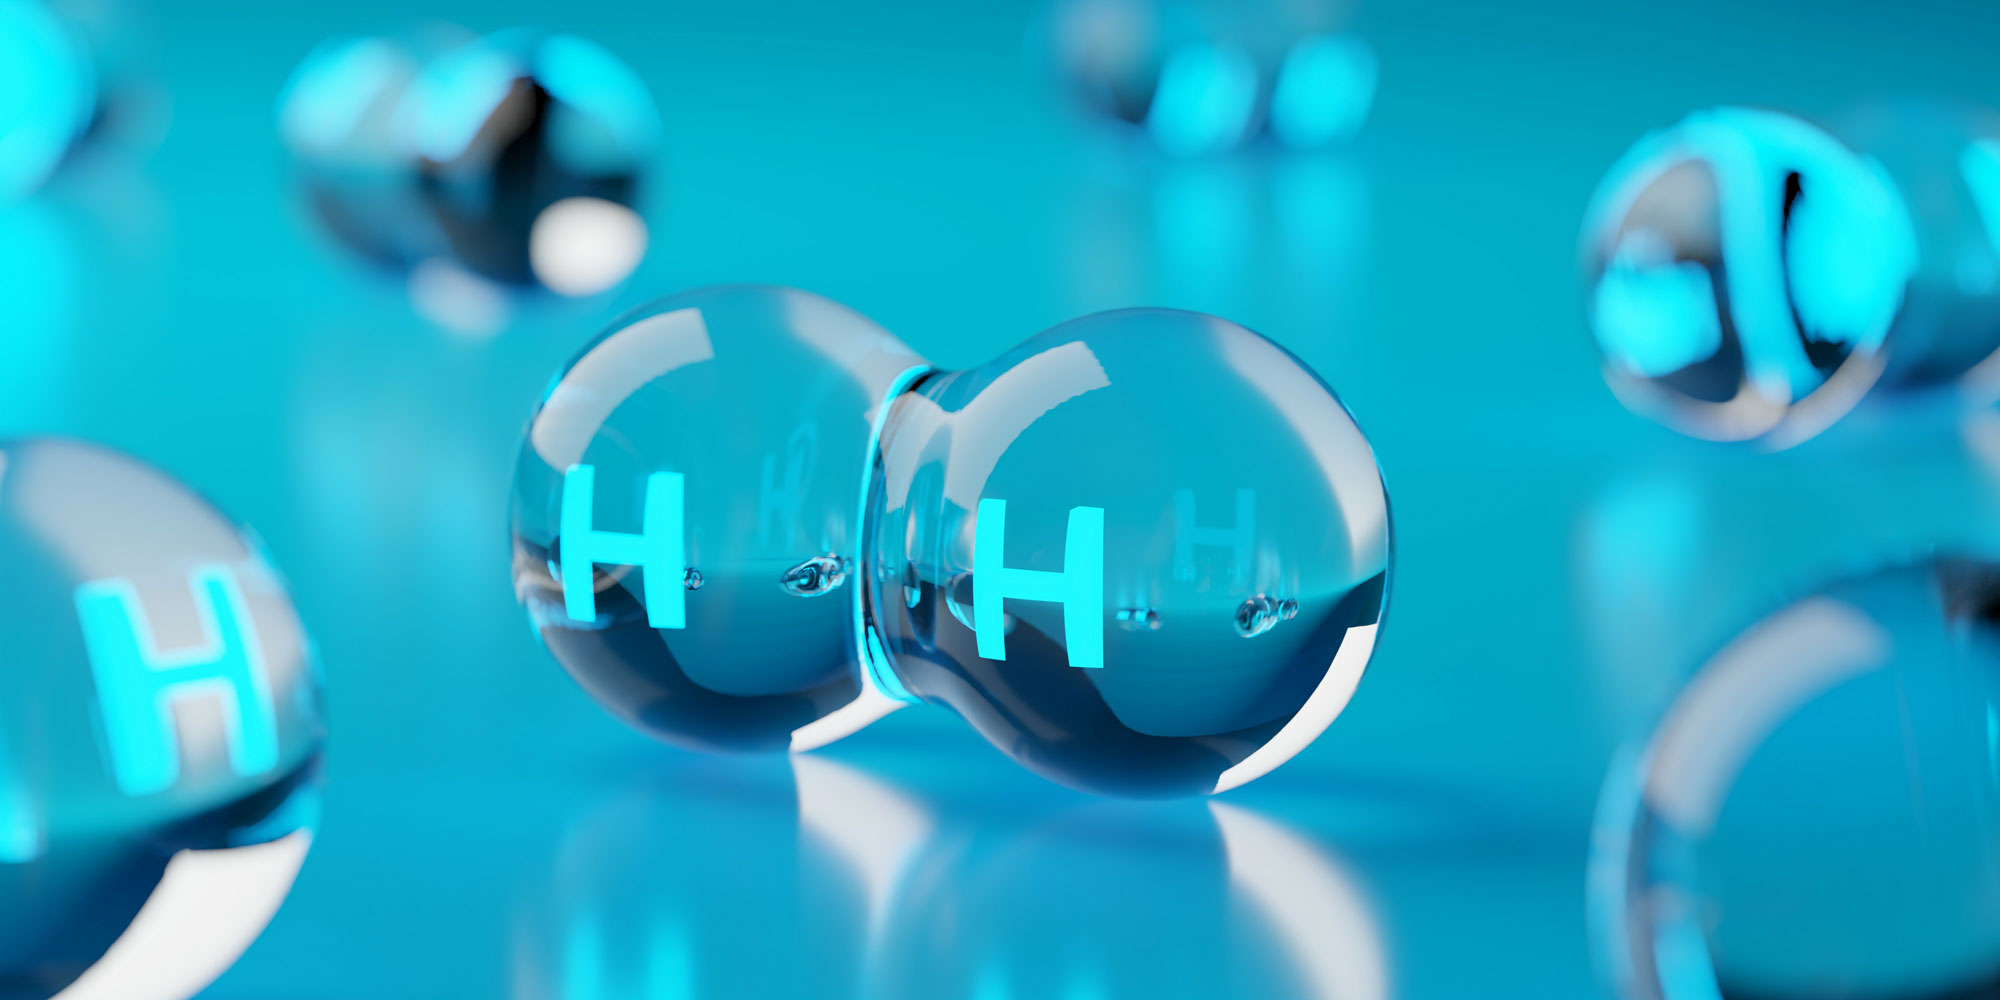 Abstrakte transparente Wasserstoff-H2-Moleküle auf blauem Hintergrund, saubere Energie oder Chemiekonzept